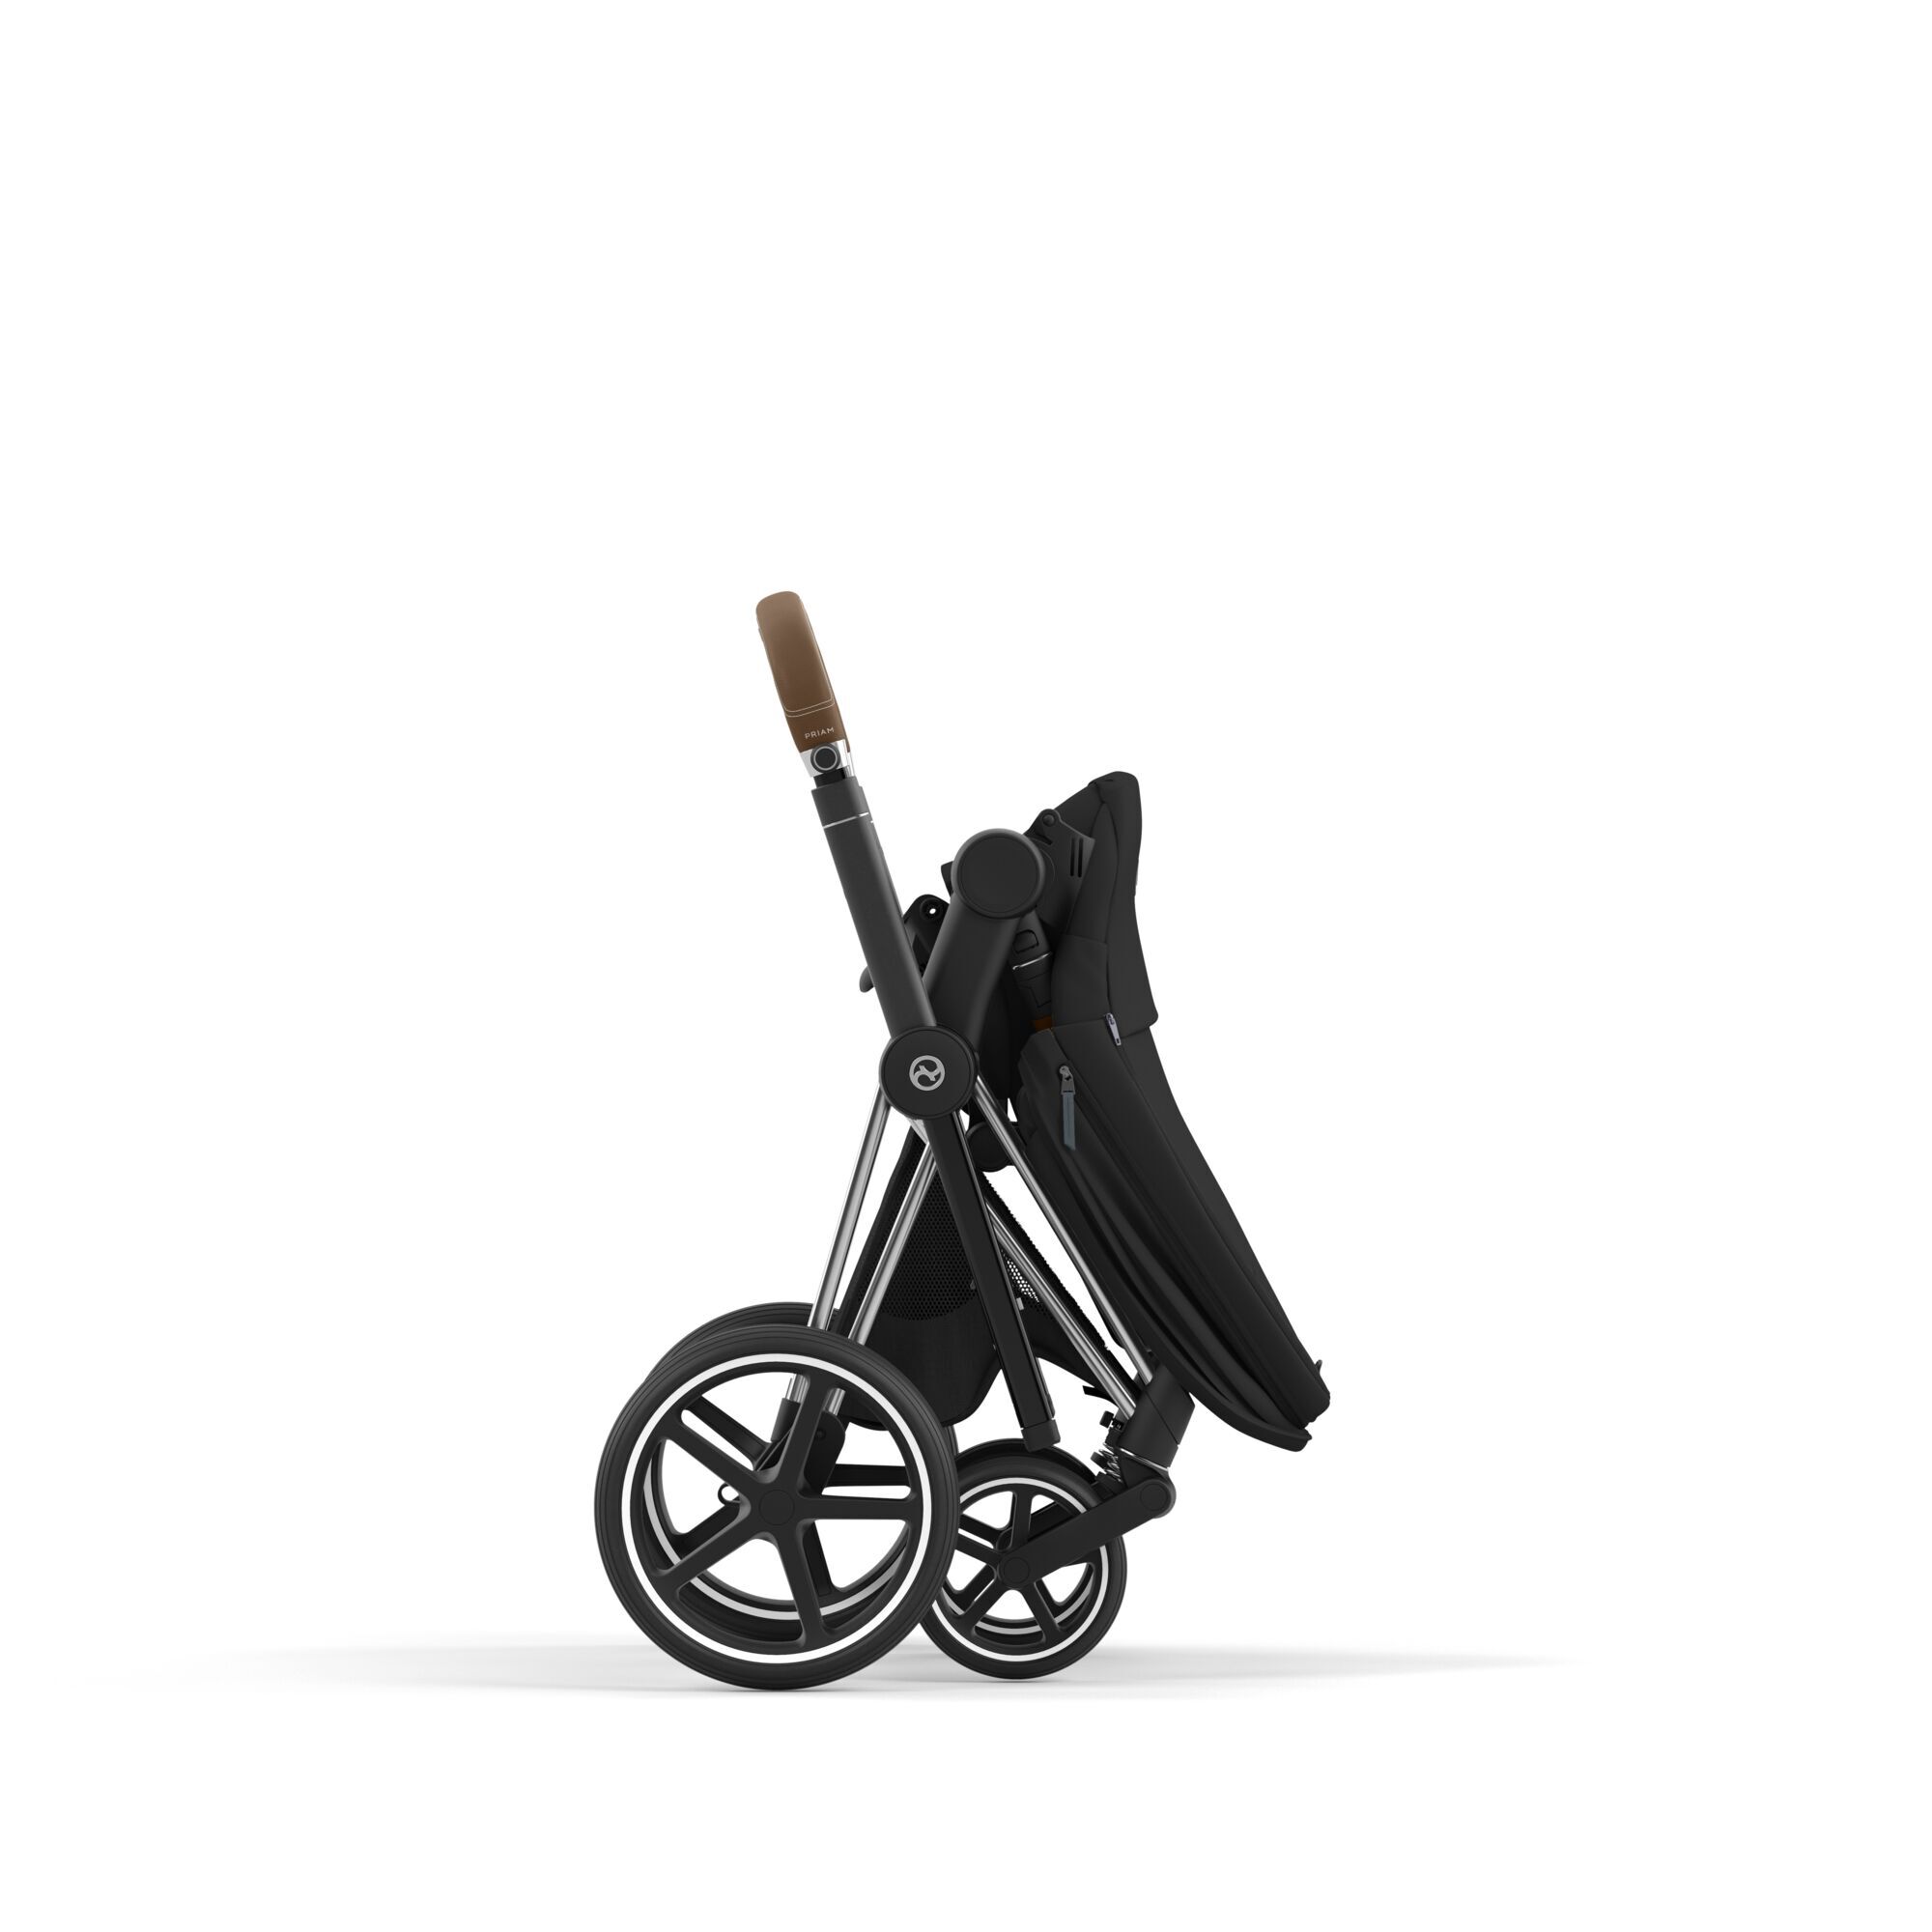 Комфорт, безопасность, стиль и инновации - детские автокресла и коляски Cybex!